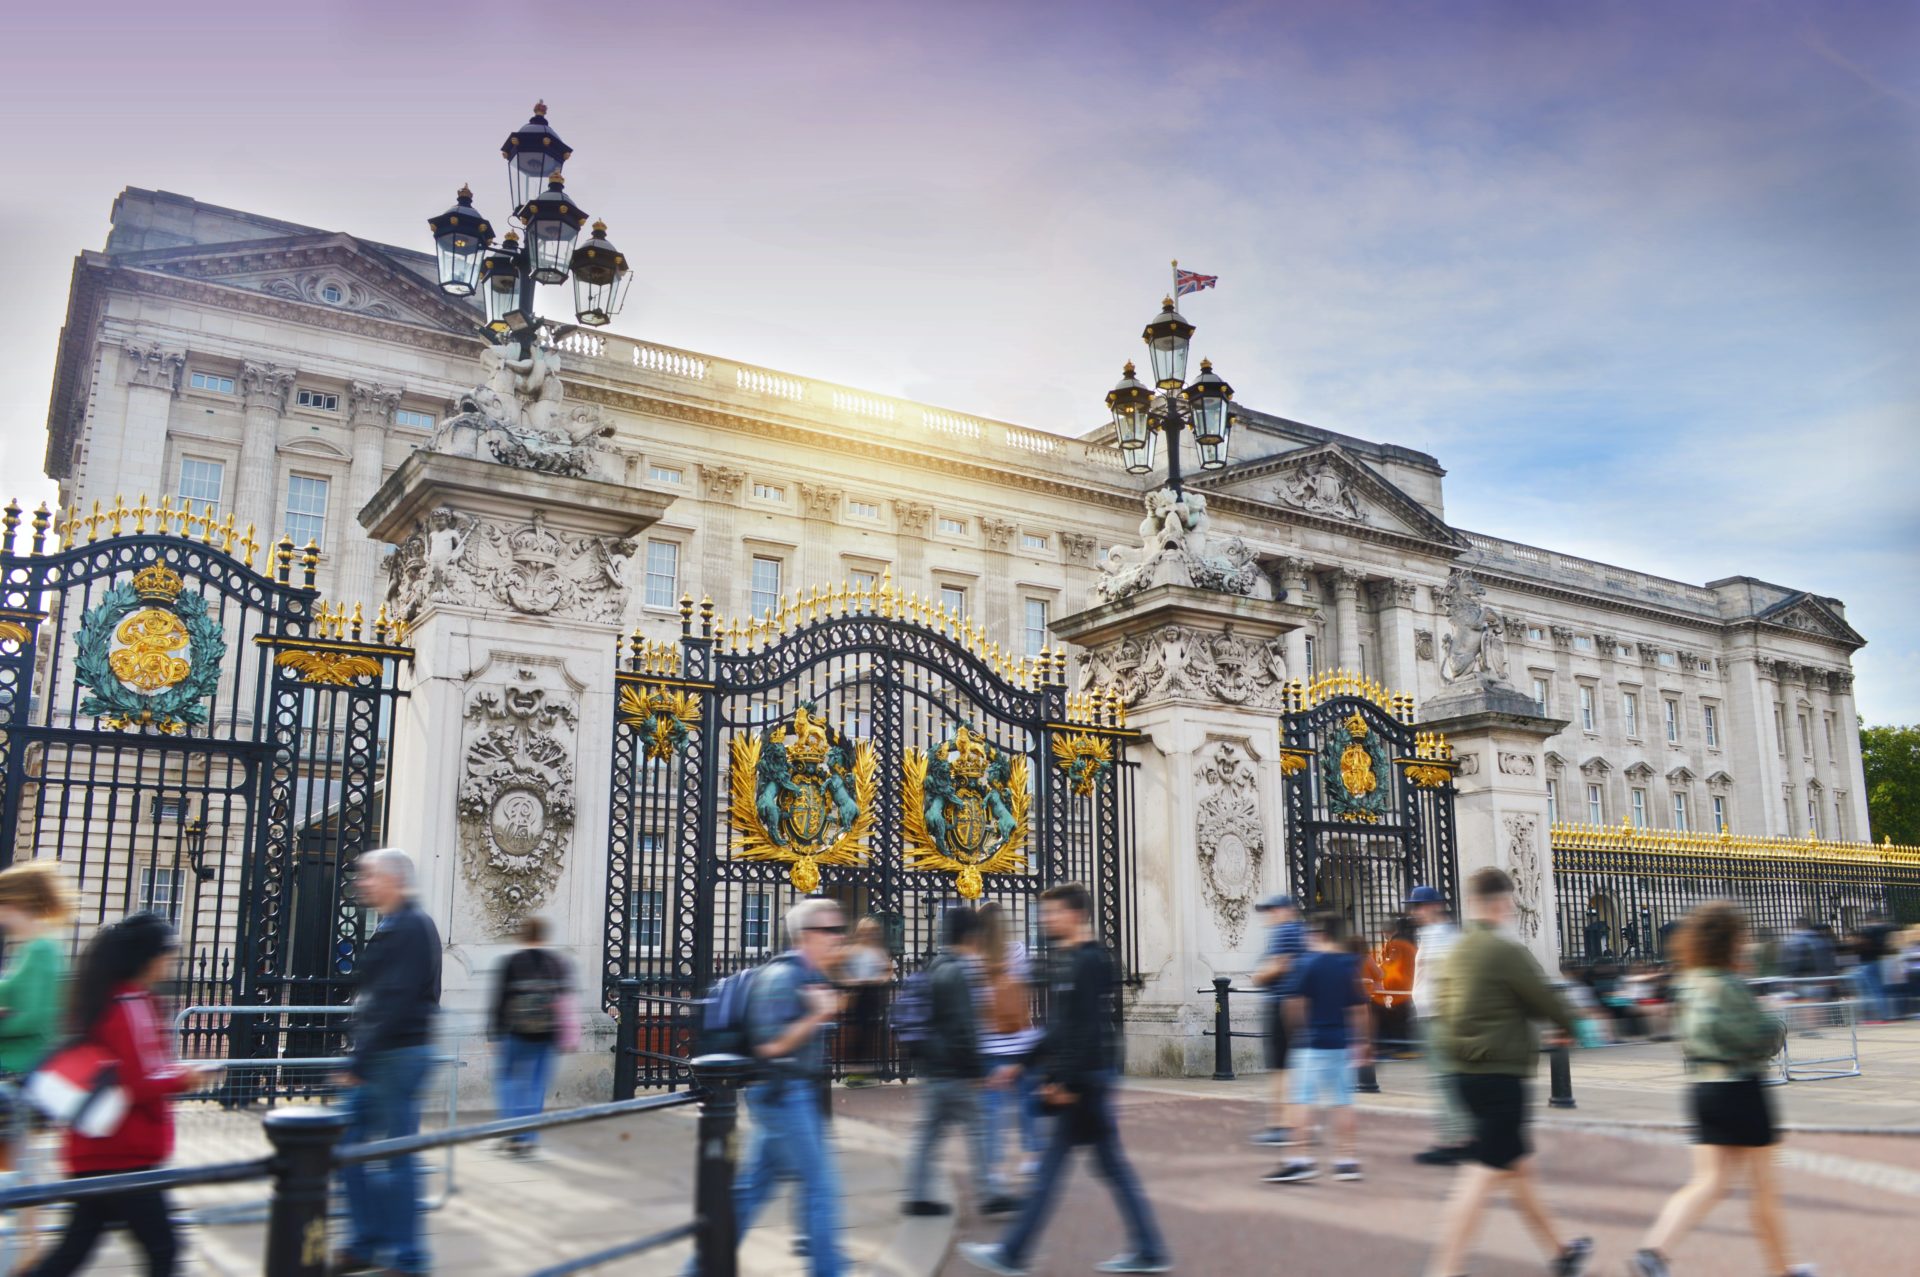 Gates to Buckingham Palace, London